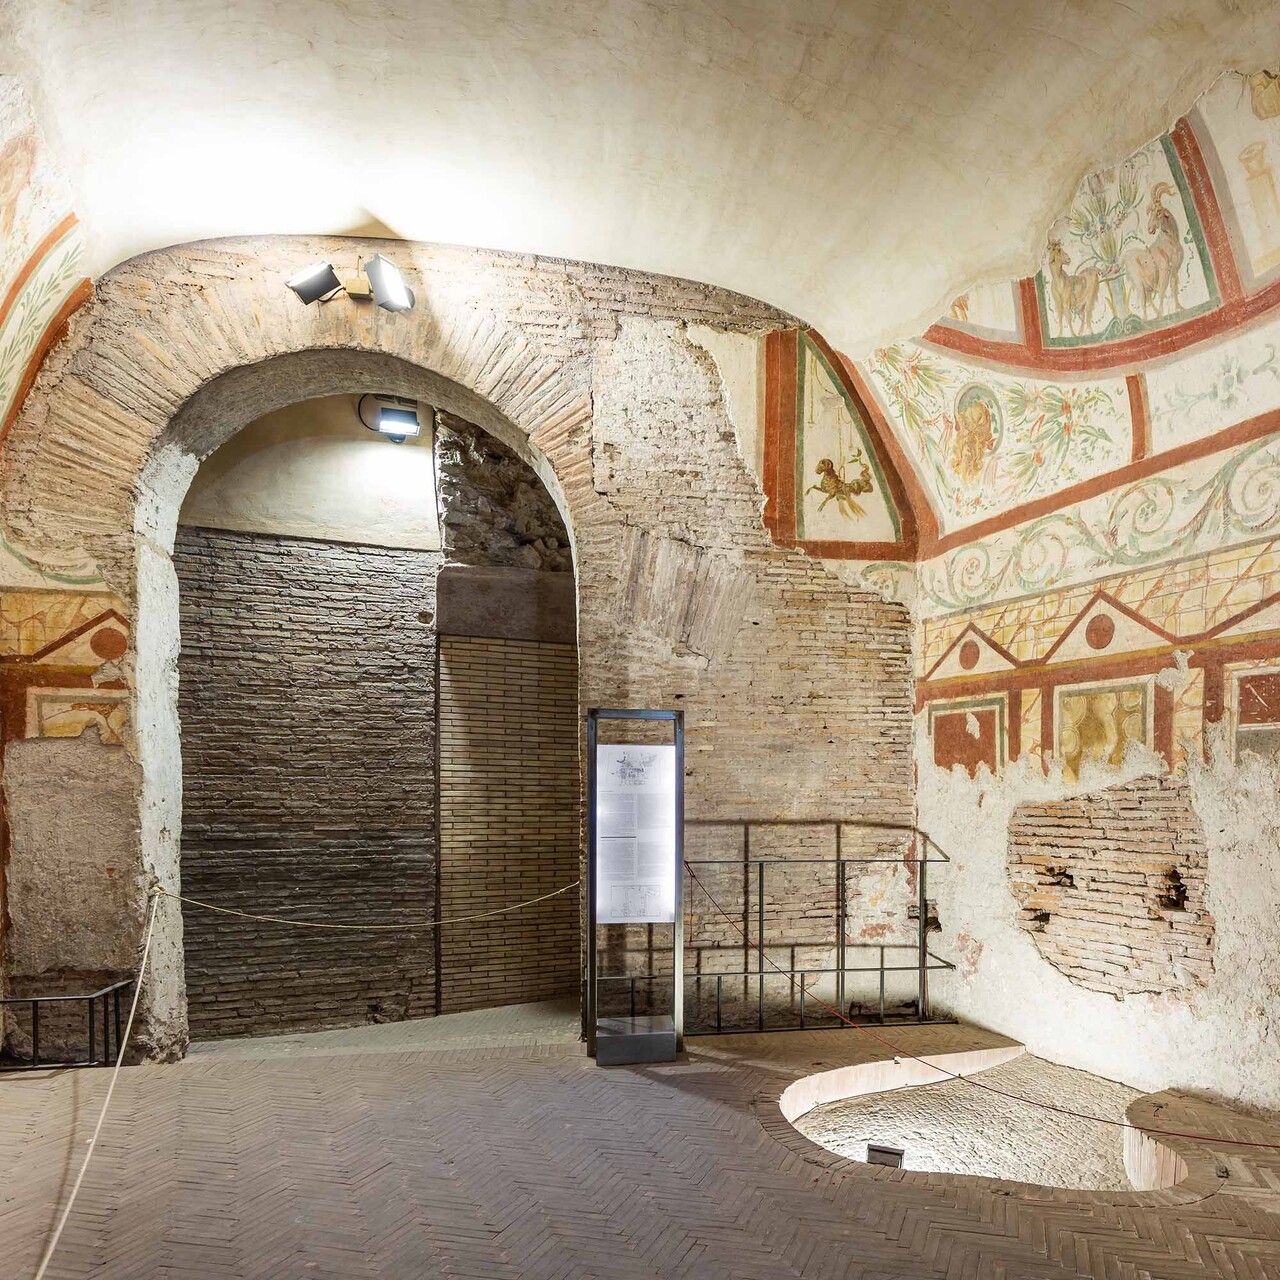 ArcheoVerso: ໂຄງການວັດທະນະທໍາຈະນໍາໃຊ້ Case Romane del Celio, ສະຖານທີ່ທີ່ຢູ່ອາໄສຂອງຊາວໂຣມັນບູຮານ, ຍັງມີຫນ້ອຍທີ່ຮູ້ຈັກເຖິງແມ່ນວ່າຢູ່ຫລັງ Colosseum, ສໍາລັບໄລຍະທົດລອງສອງປີ.